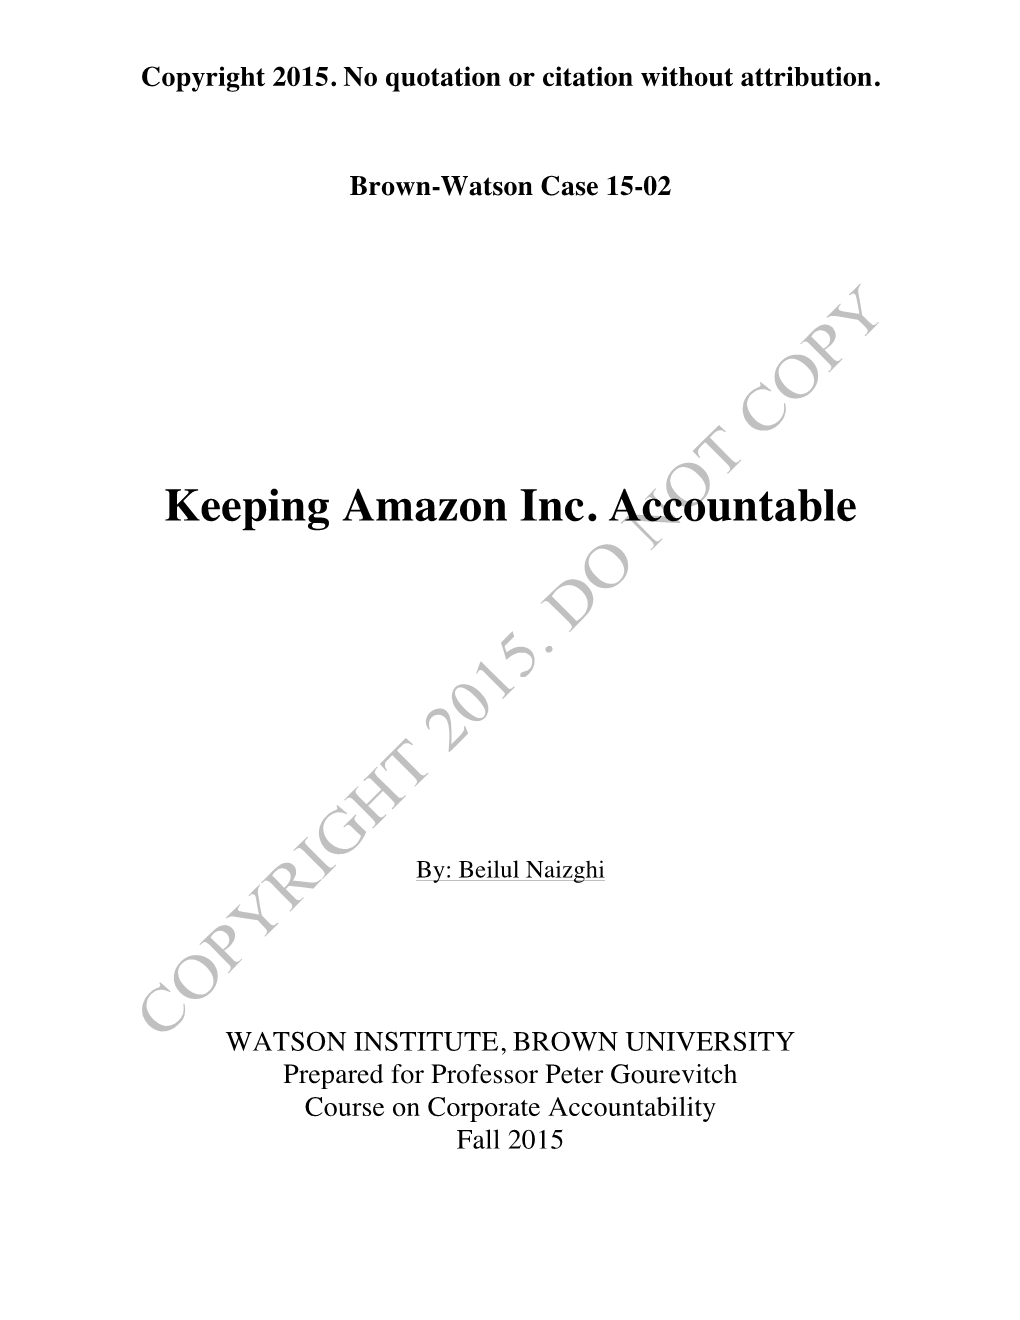 Keeping Amazon Inc. Accountable